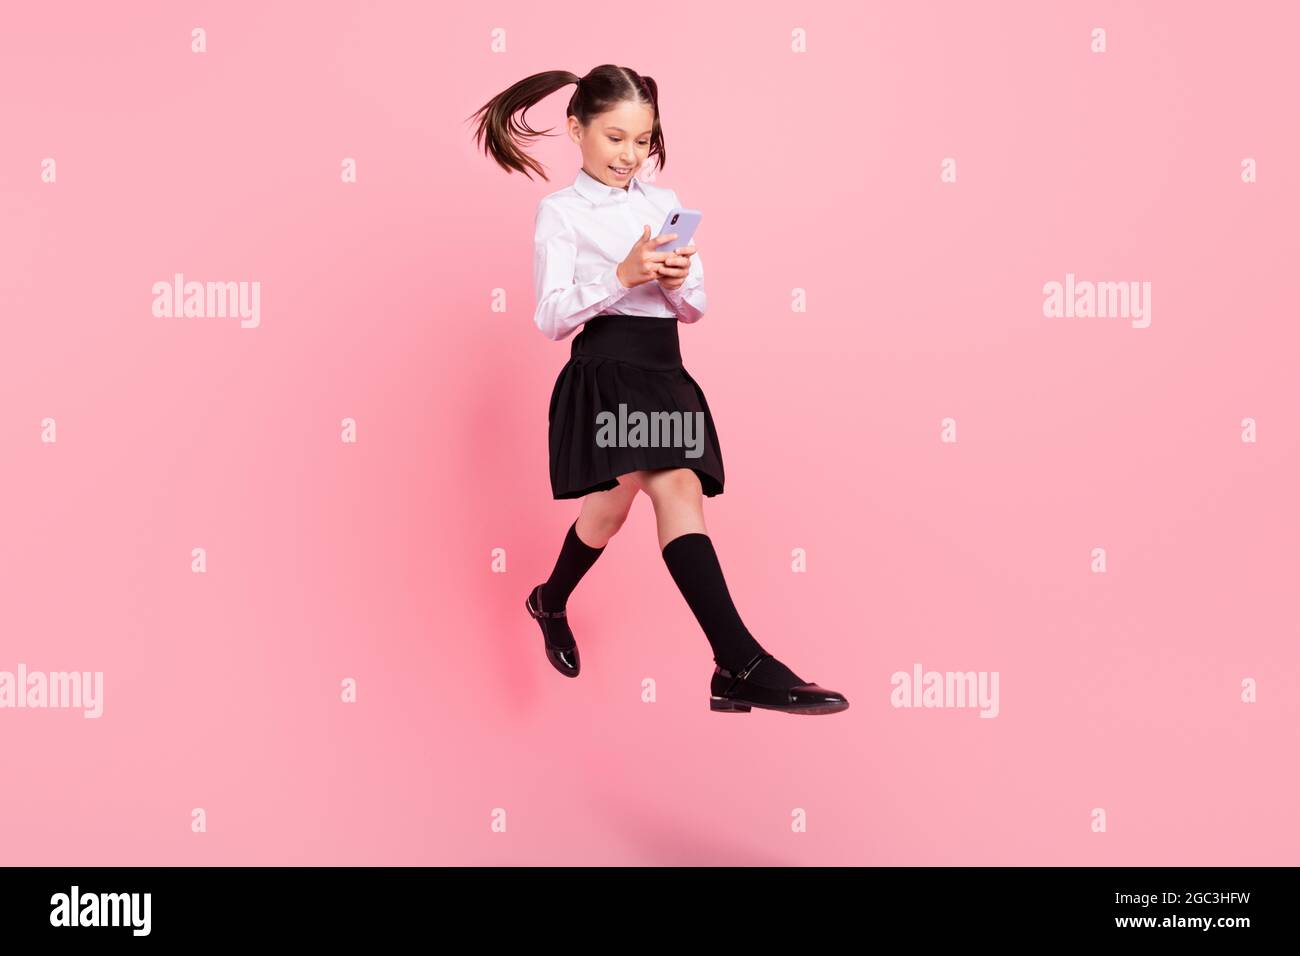 Foto in voller Größe von jungen kleinen Brünette Schwänze behaarte Mädchen  springen halten Telefon gehen tragen formalwear uniform isoliert auf rosa  Farbe Hintergrund Stockfotografie - Alamy